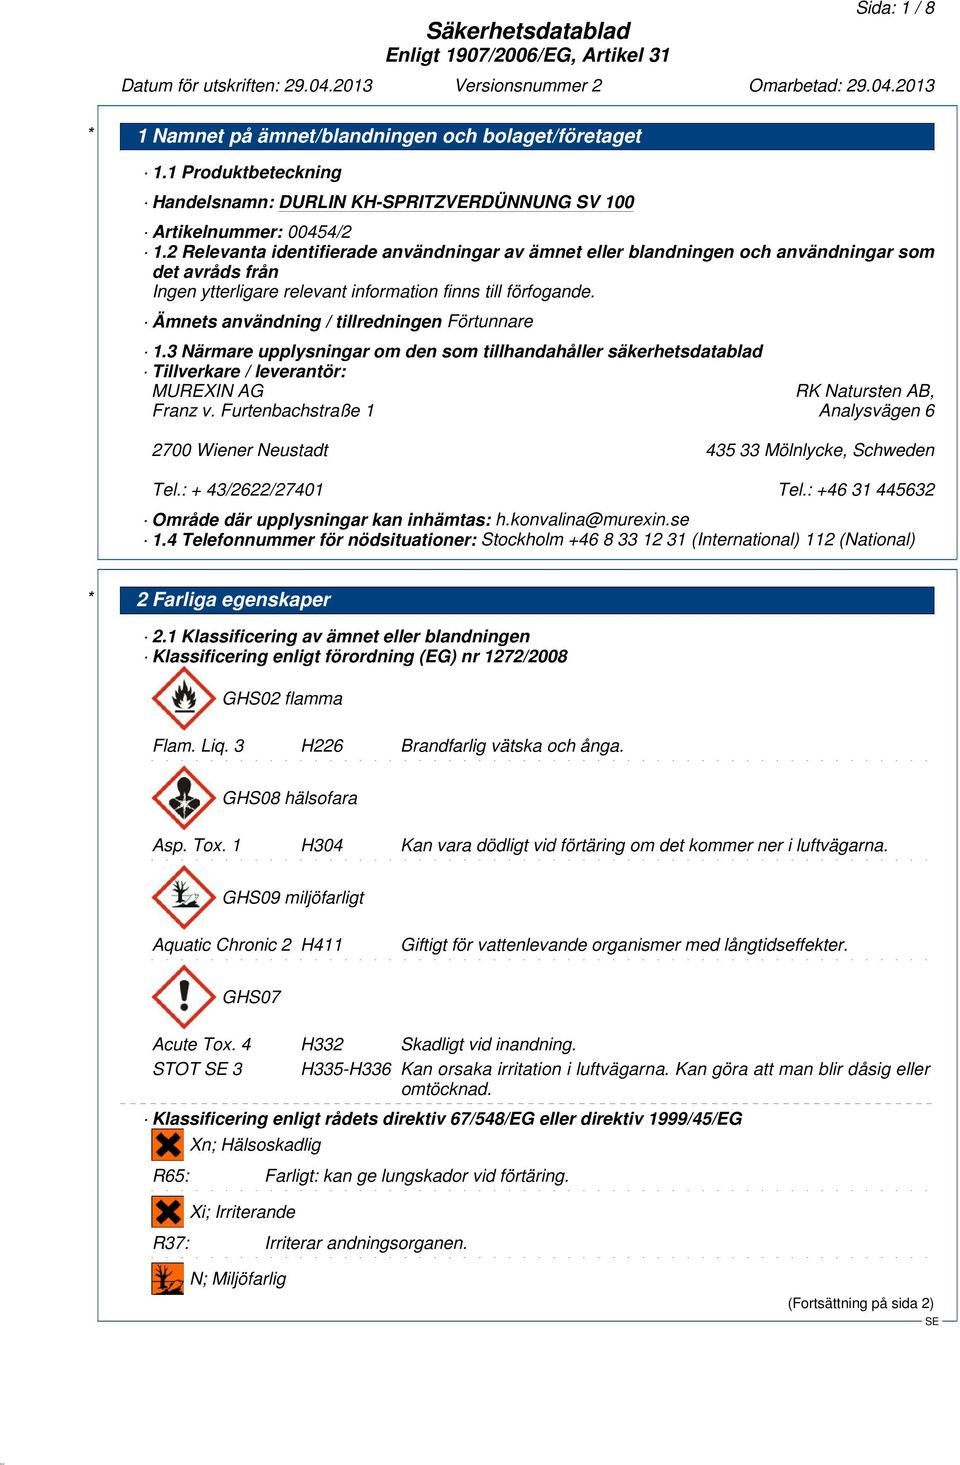 Ämnets användning / tillredningen Förtunnare 1.3 Närmare upplysningar om den som tillhandahåller säkerhetsdatablad Tillverkare / leverantör: MUREXIN AG RK Natursten AB, Franz v.